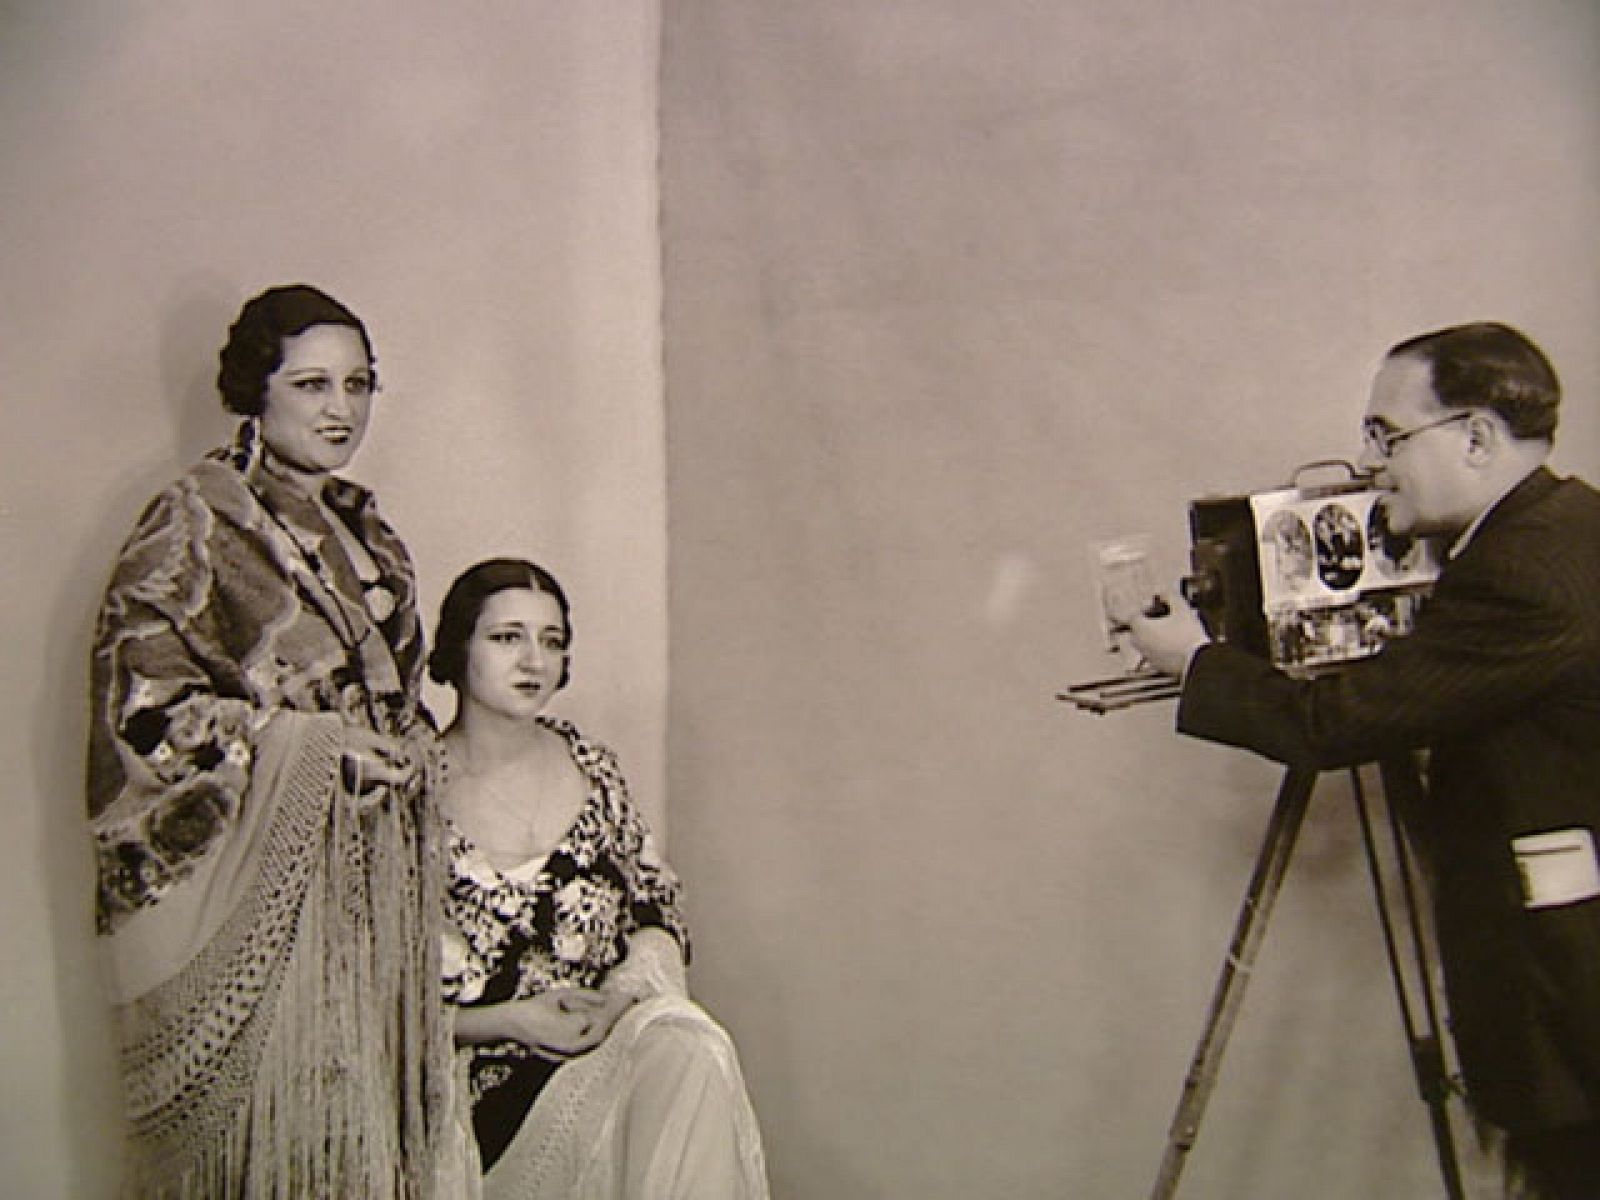 El fotógrafo retrató con su vieja Leica medio siglo de la historia de España, desde 1925 hasta 1975.